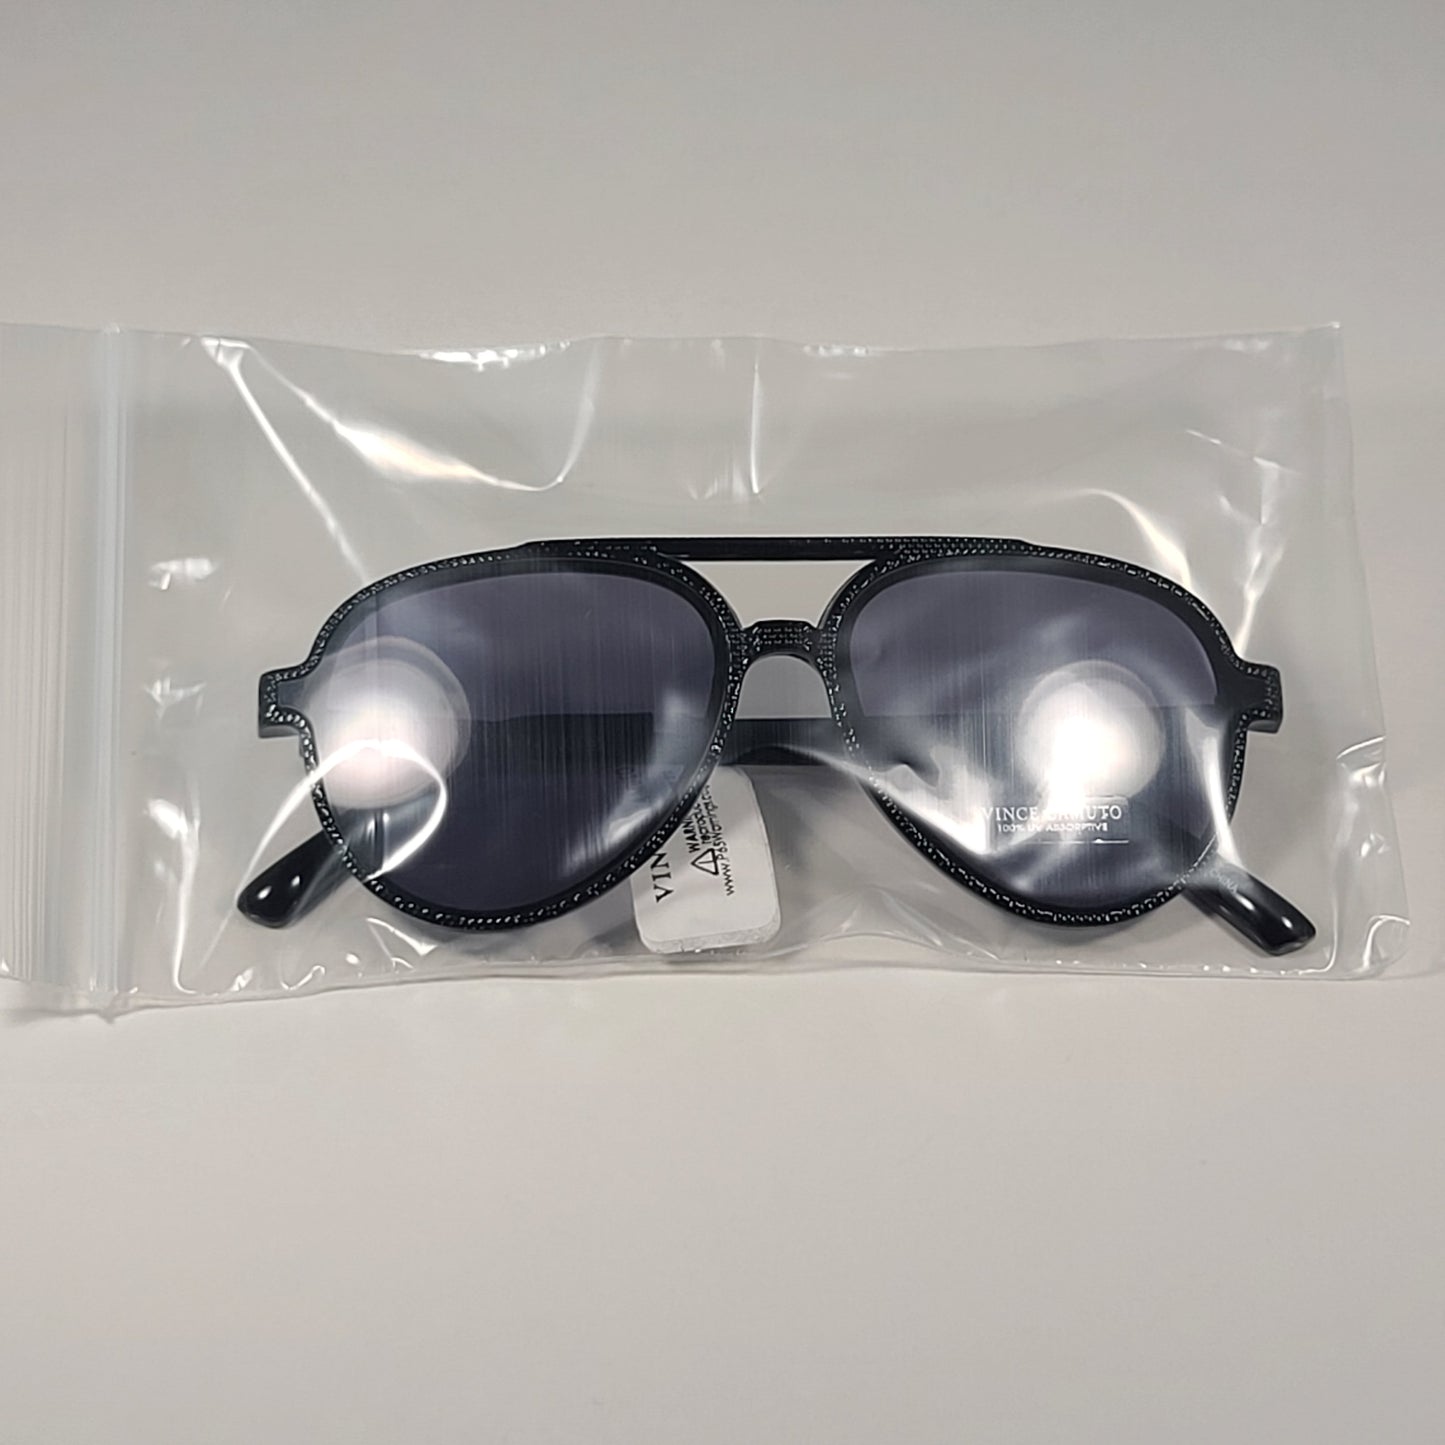 Vince Camuto VM627 OX Aviator Pilot Sunglasses Black Frame Gray Lens - Sunglasses